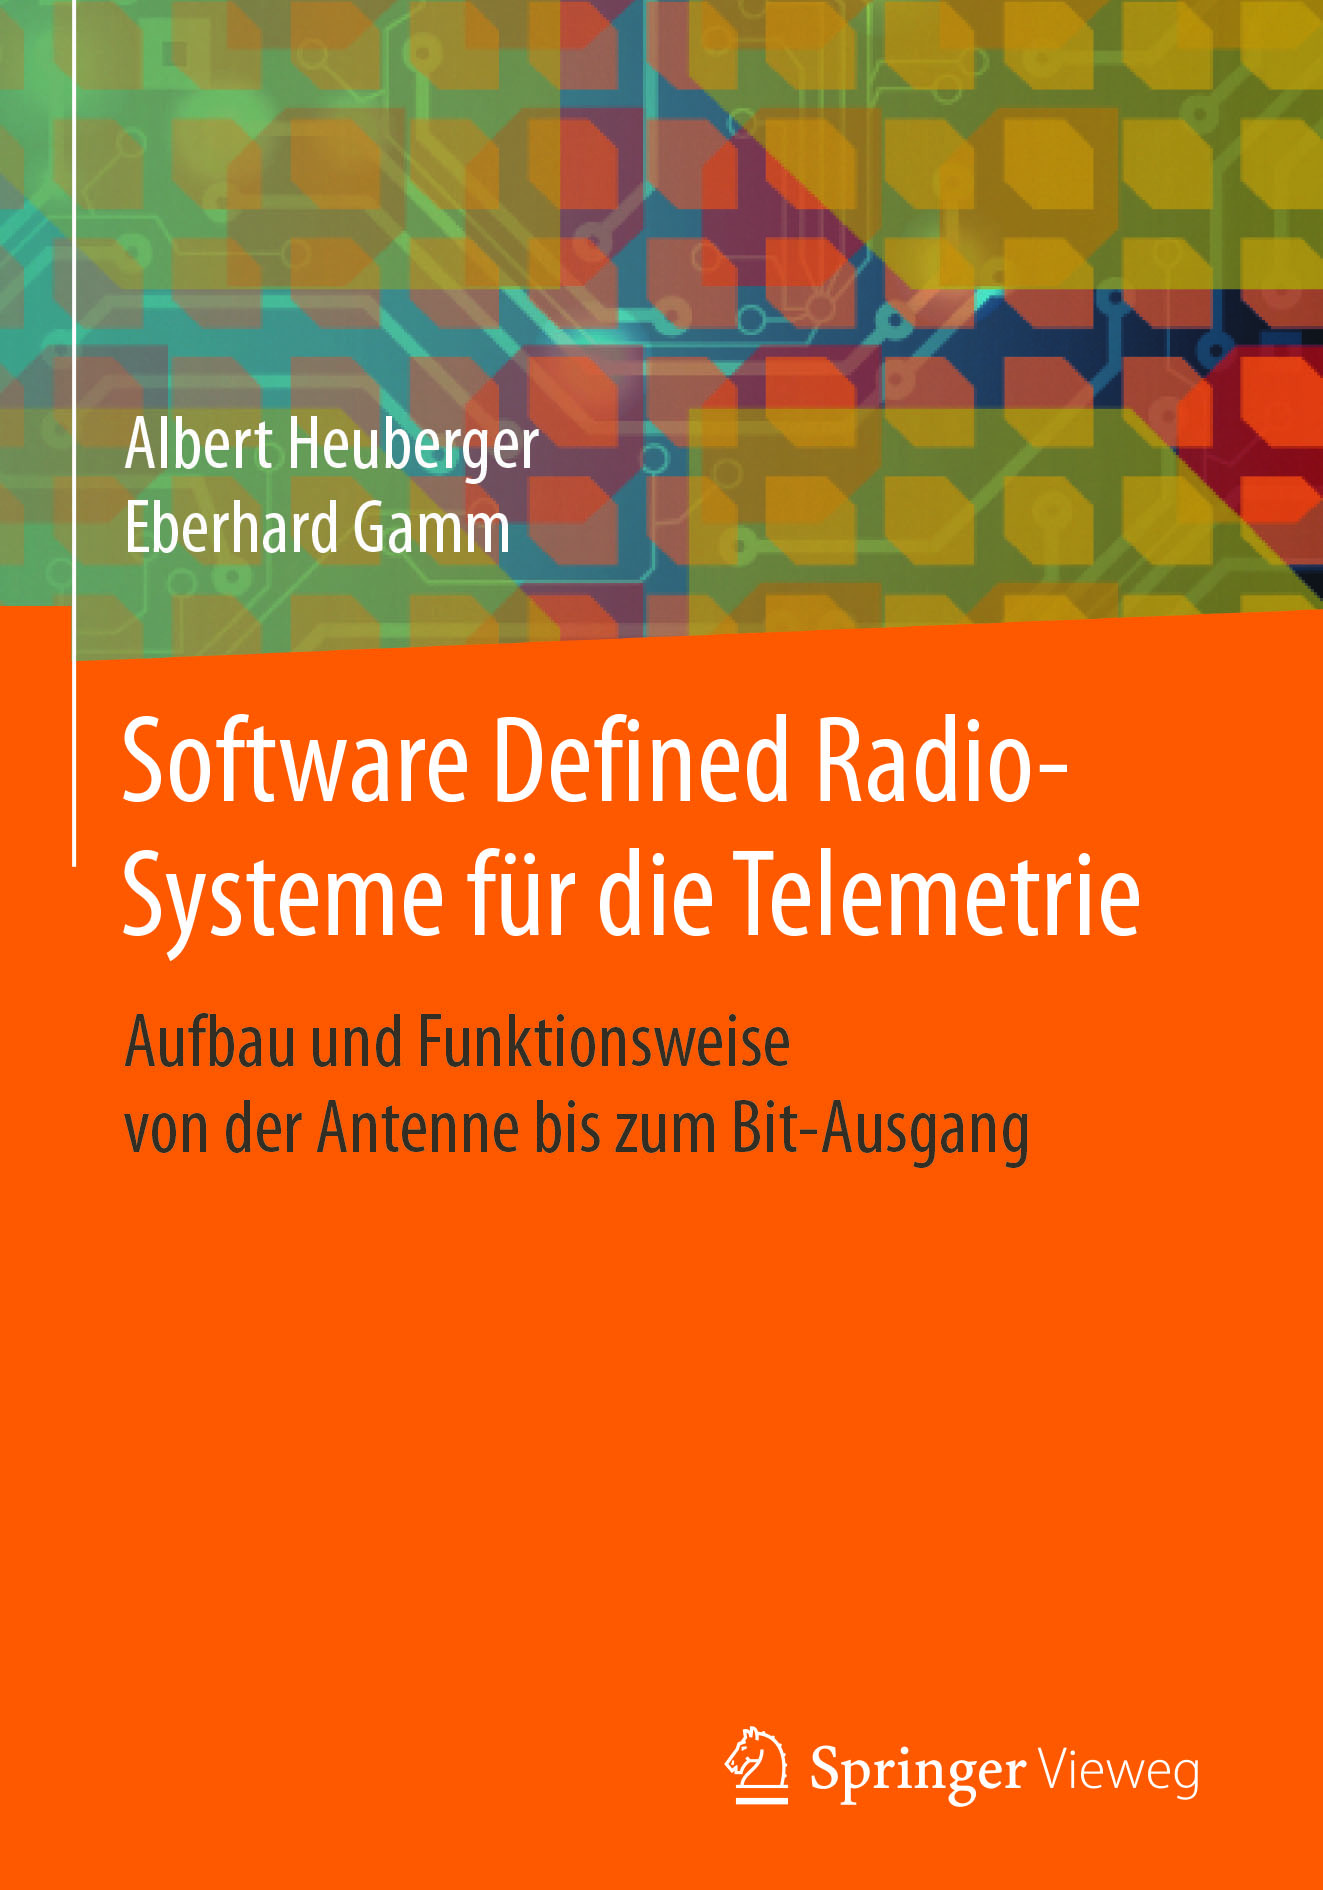 Gamm, Eberhard - Software Defined Radio-Systeme für die Telemetrie, ebook